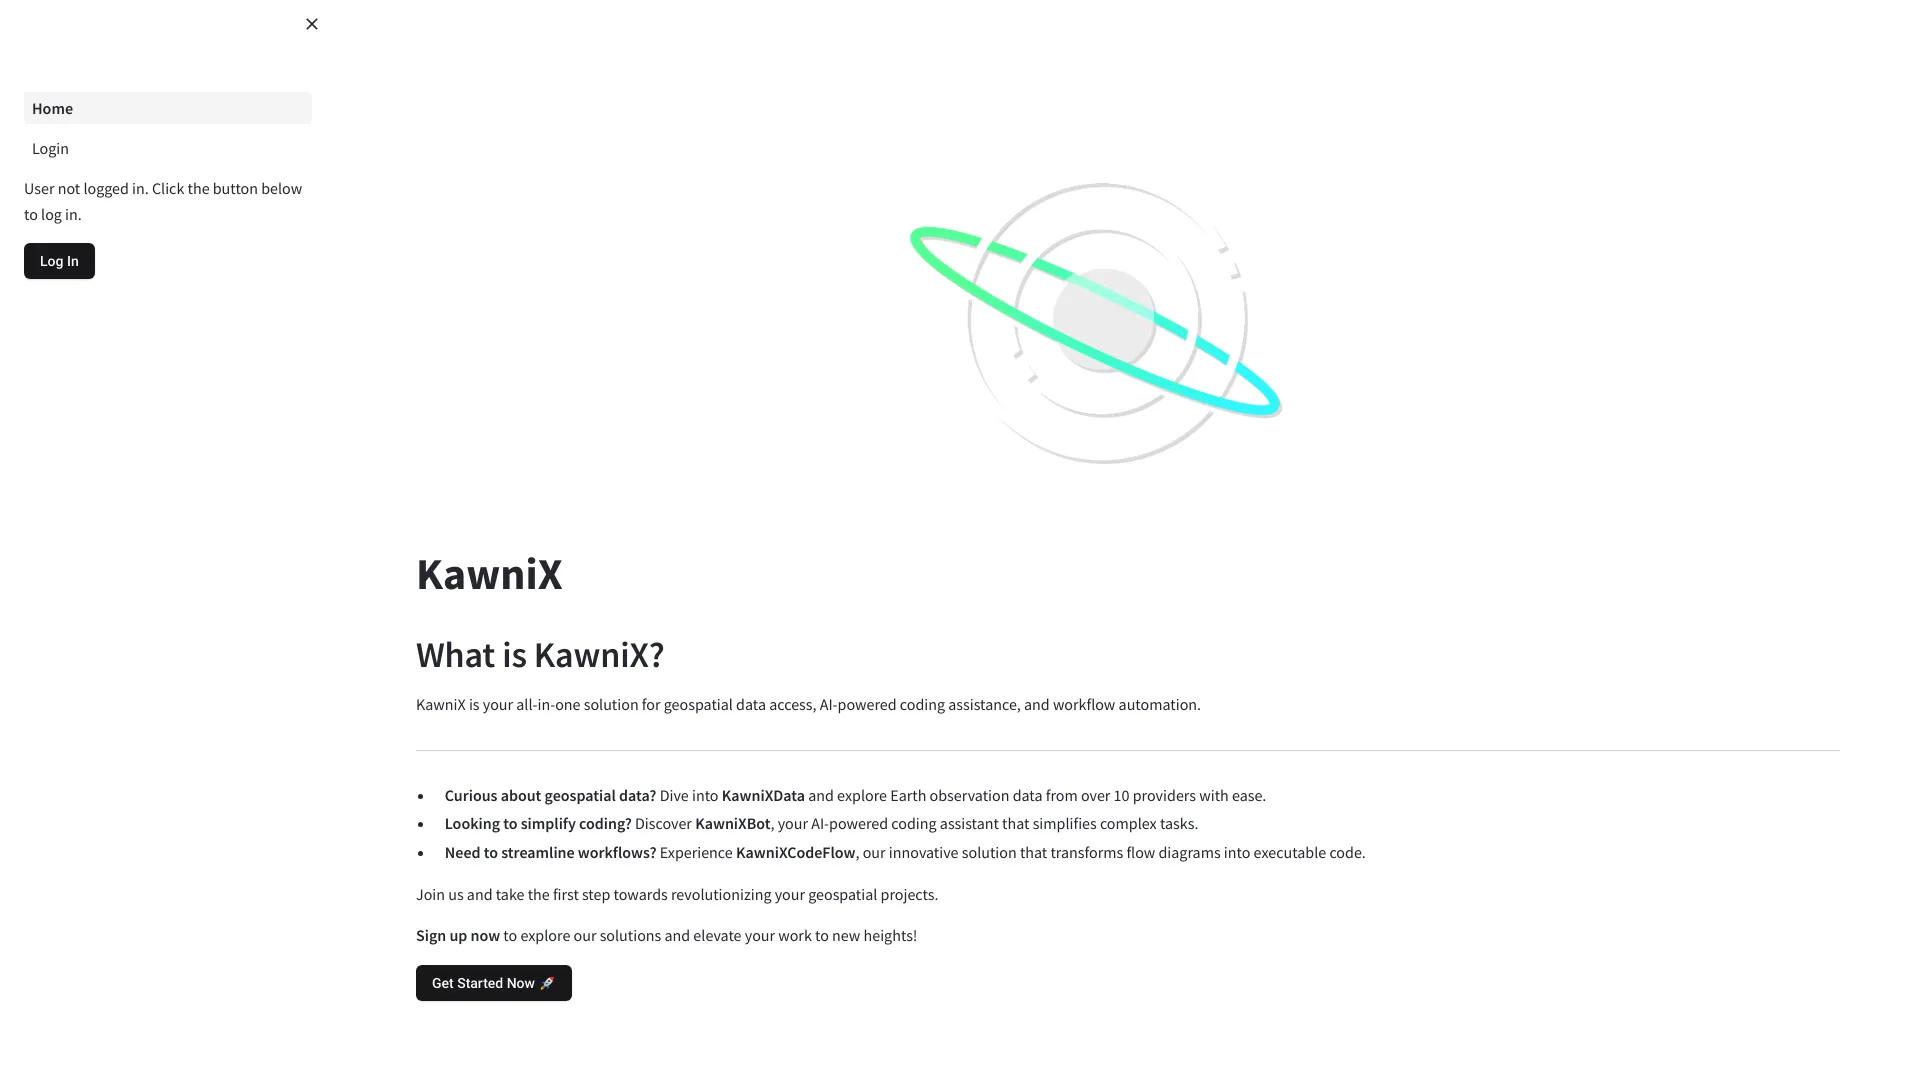 Kawnix